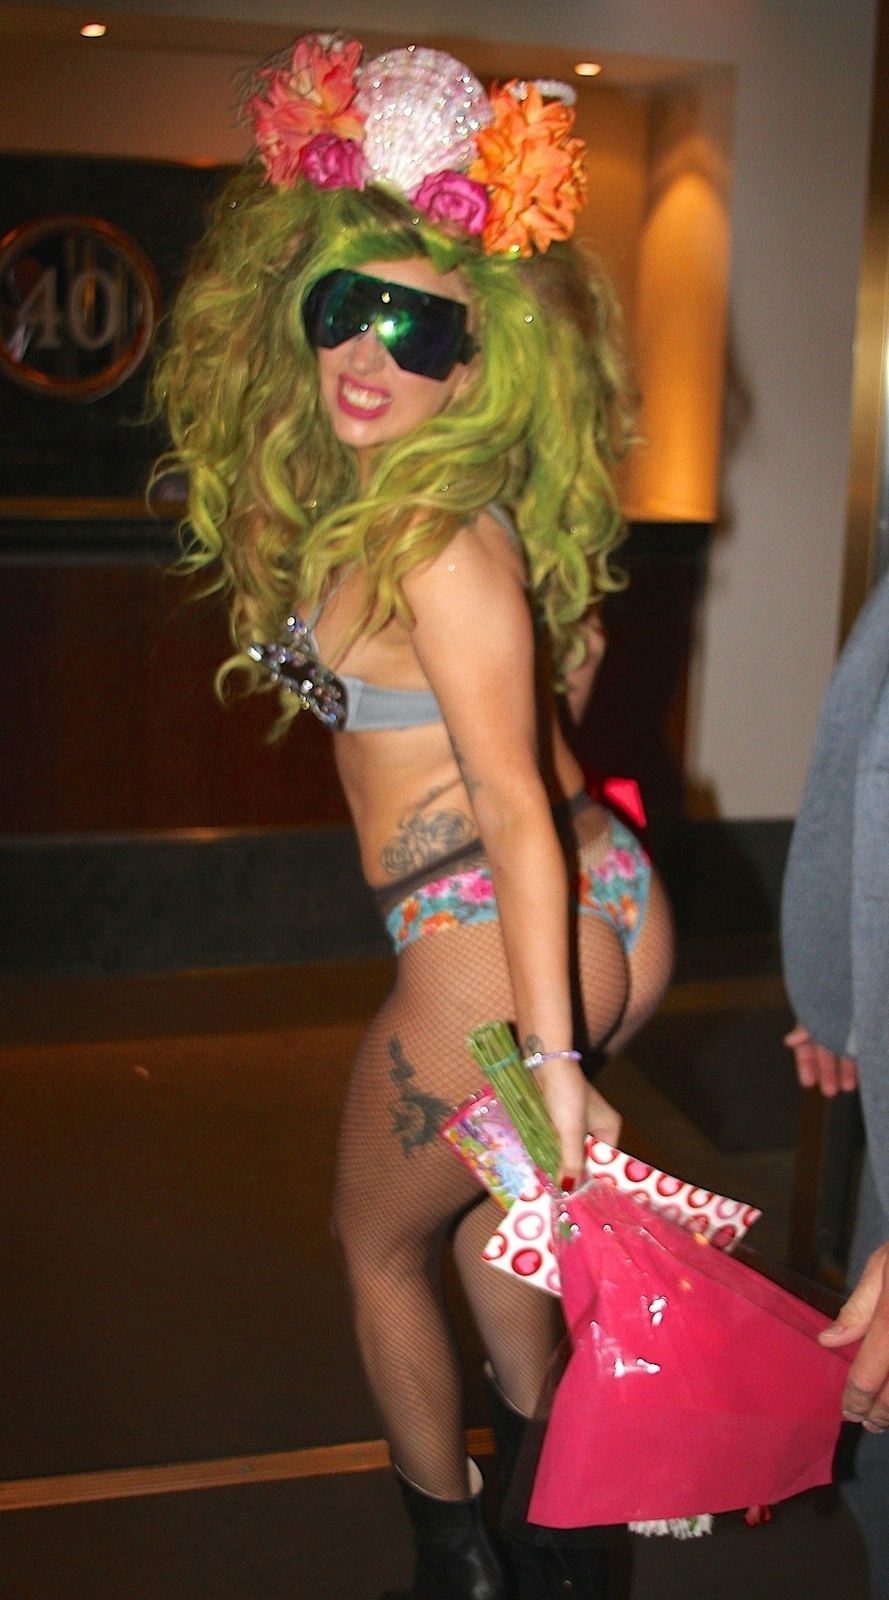 30.mar.2014 - De sutiã brilhante e calcinha florida, Lady Gaga anda por Nova York sem se importar com o frio. Recentemente, a cantora ganhou uma exposição em um hotel da cidade, que colocou em exibição os figurinos usados por ela no clipe de 